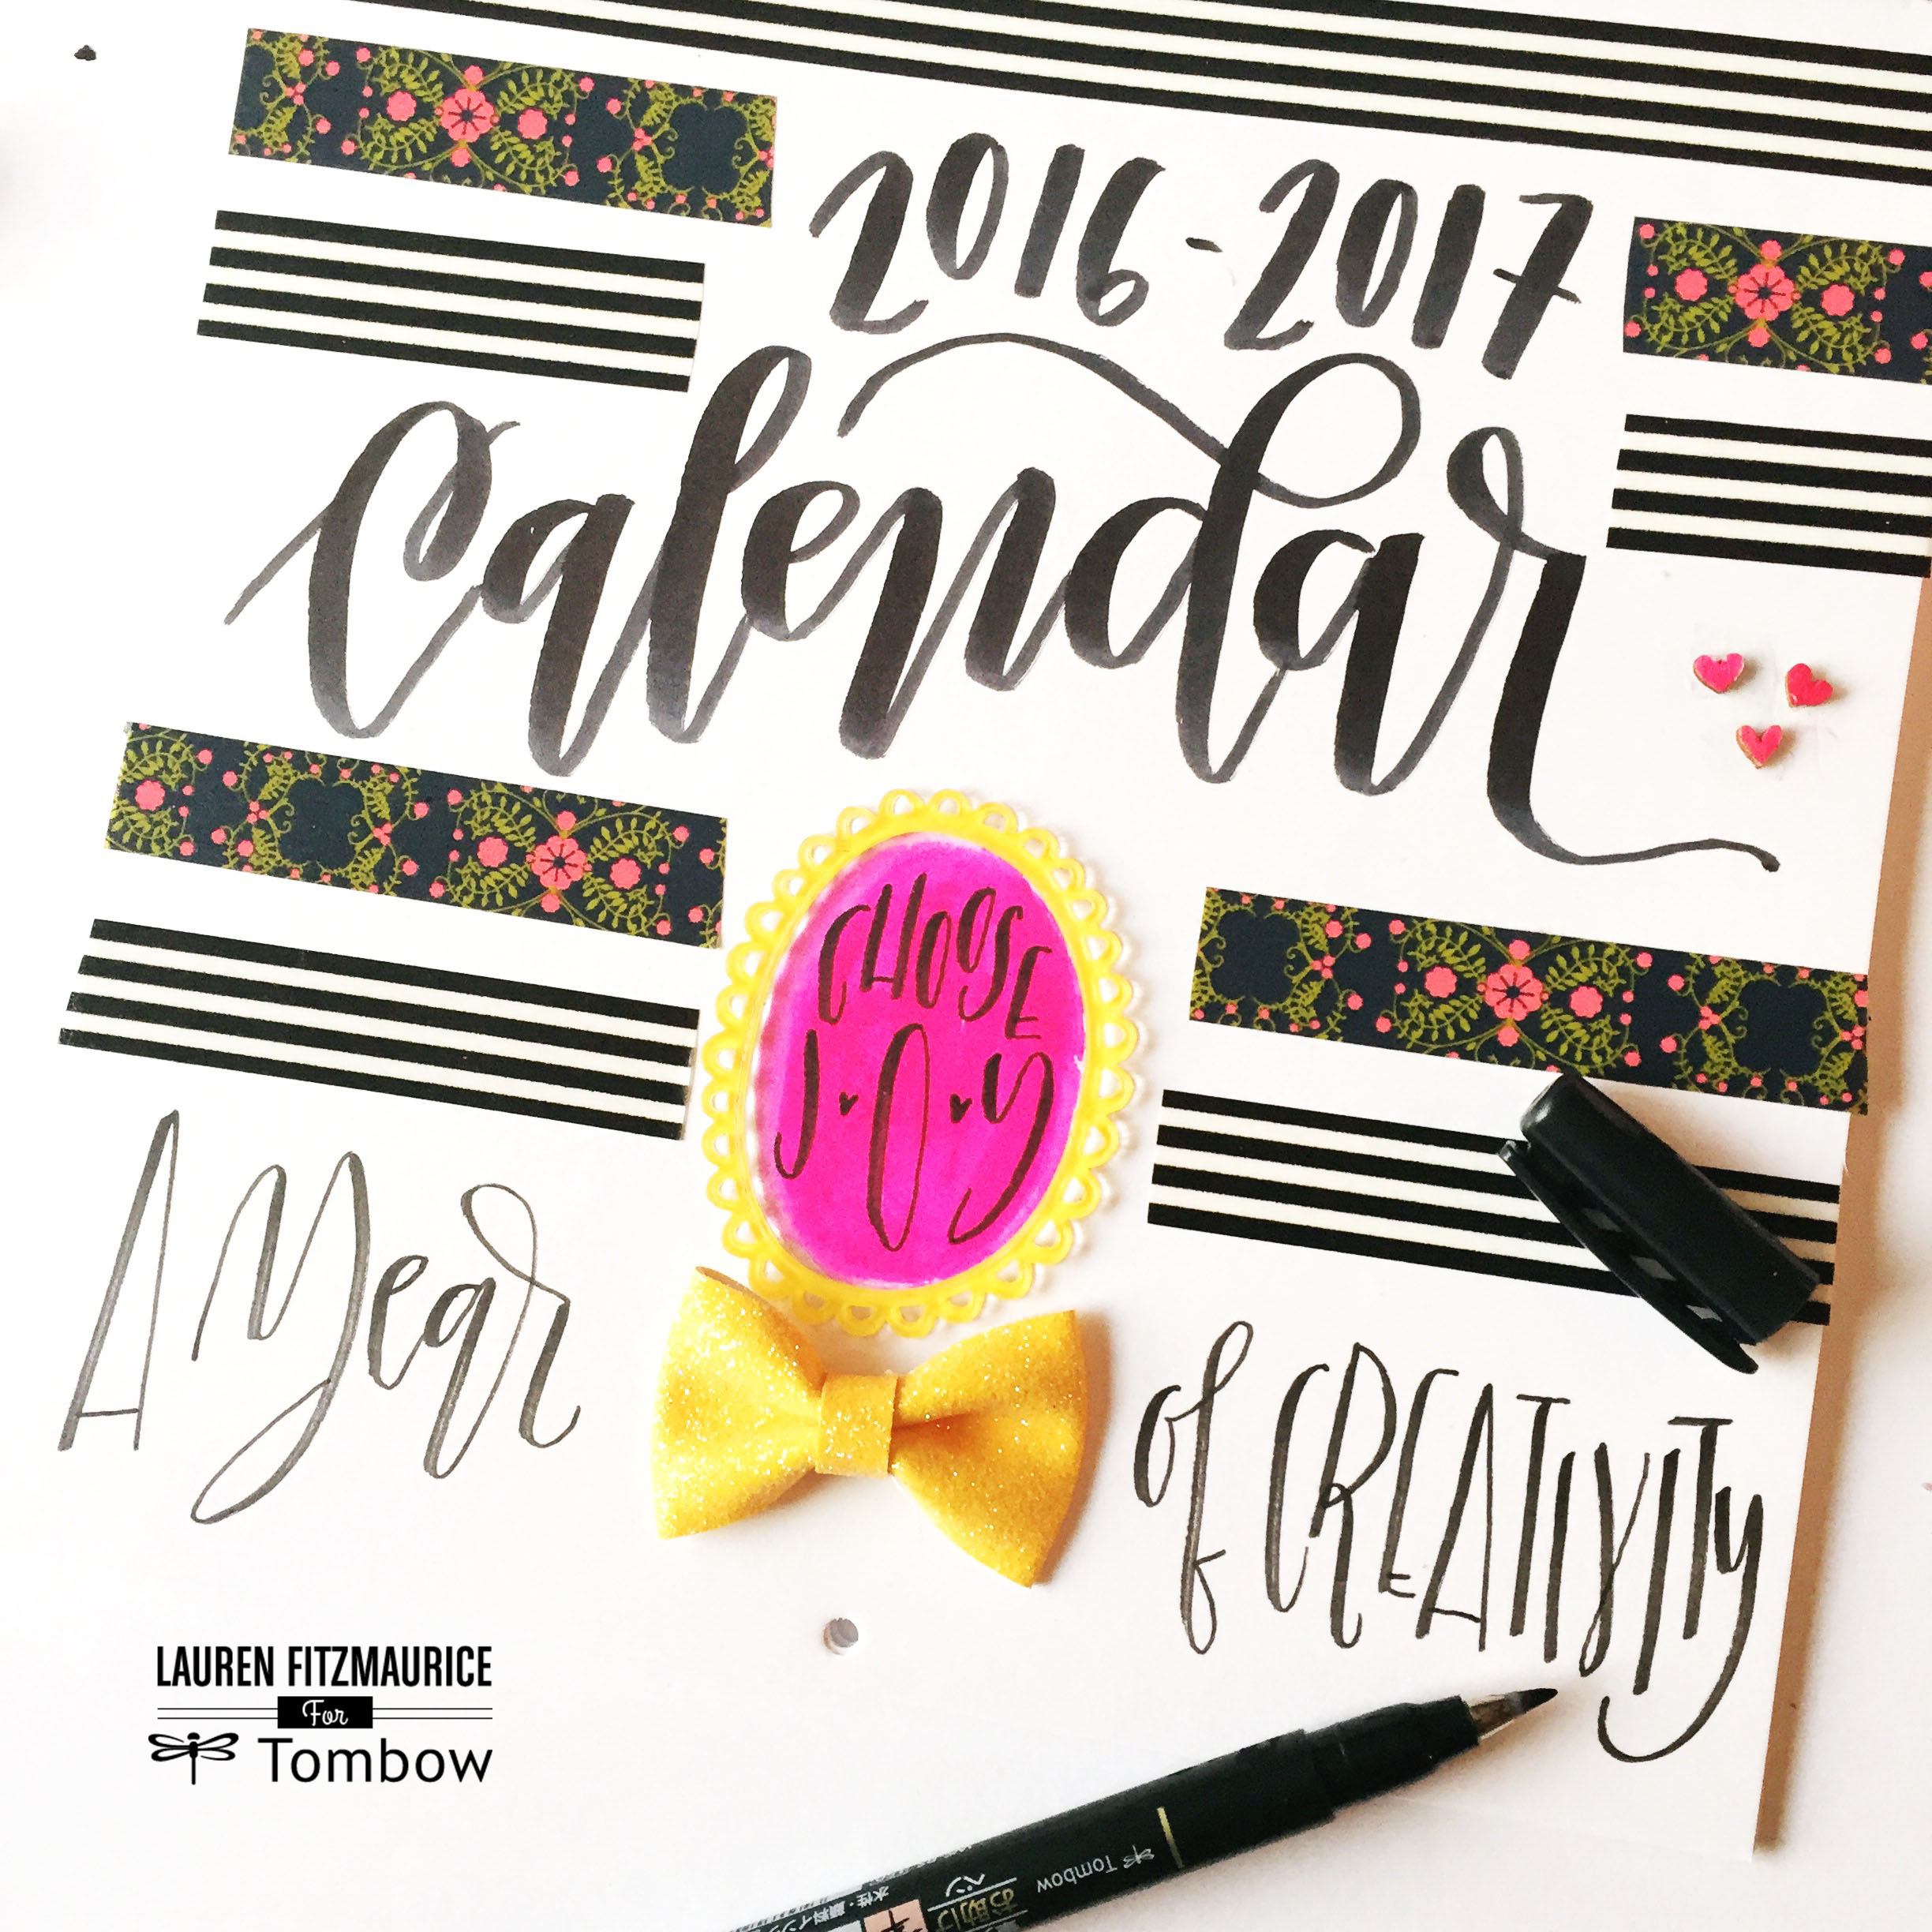 Creative calendar cover